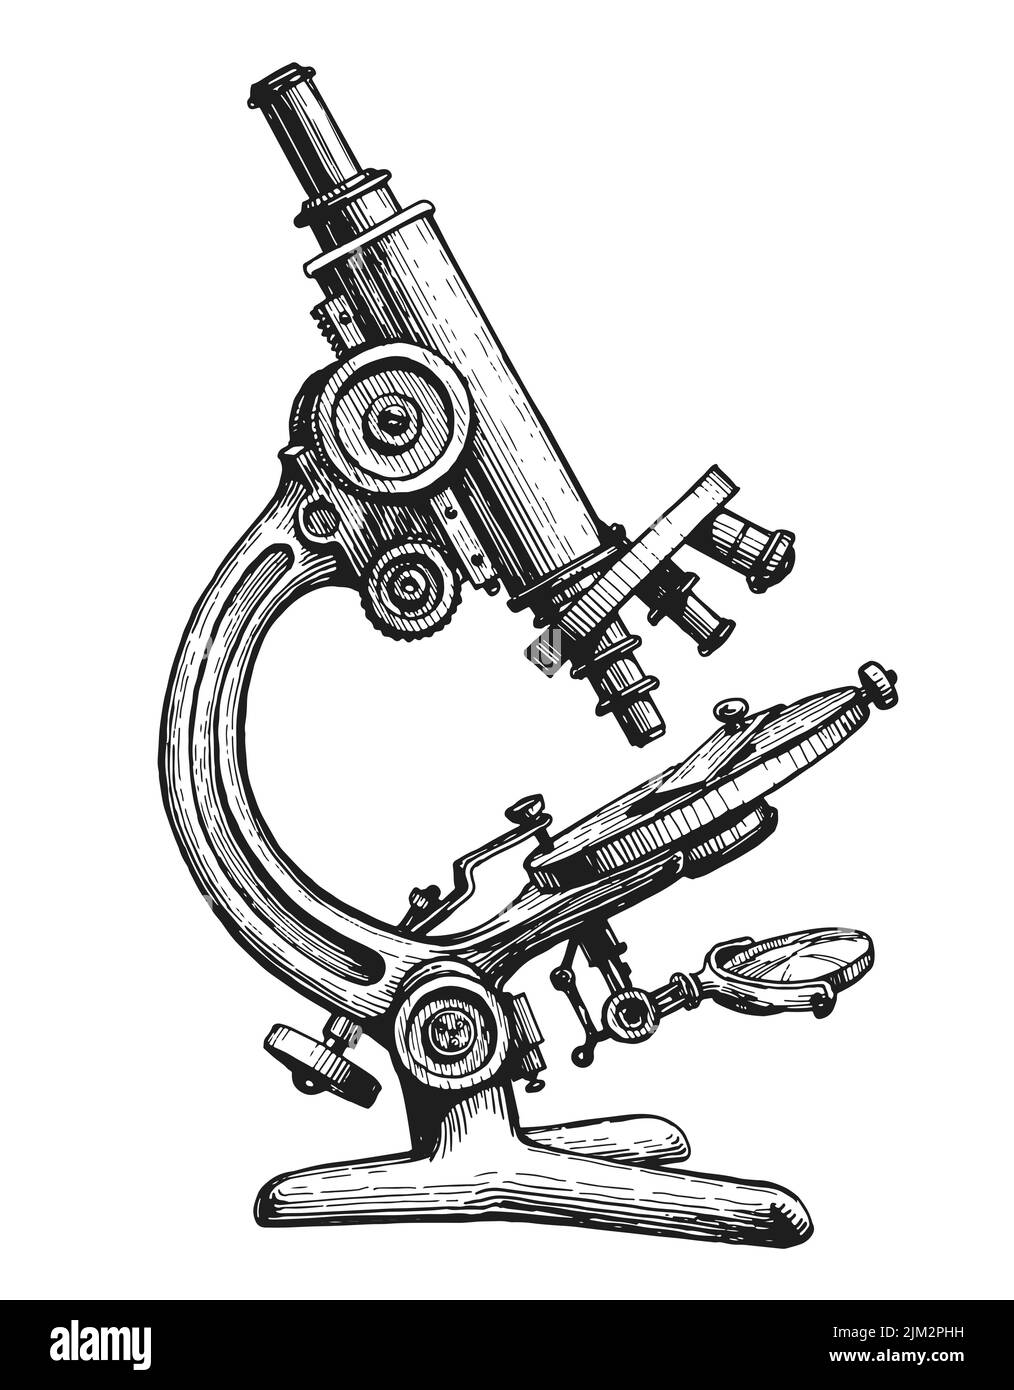 Microscopio vintage de boceto dibujado a mano. Pruebas médicas, concepto de laboratorio químico. Ilustración vectorial aislada Ilustración del Vector